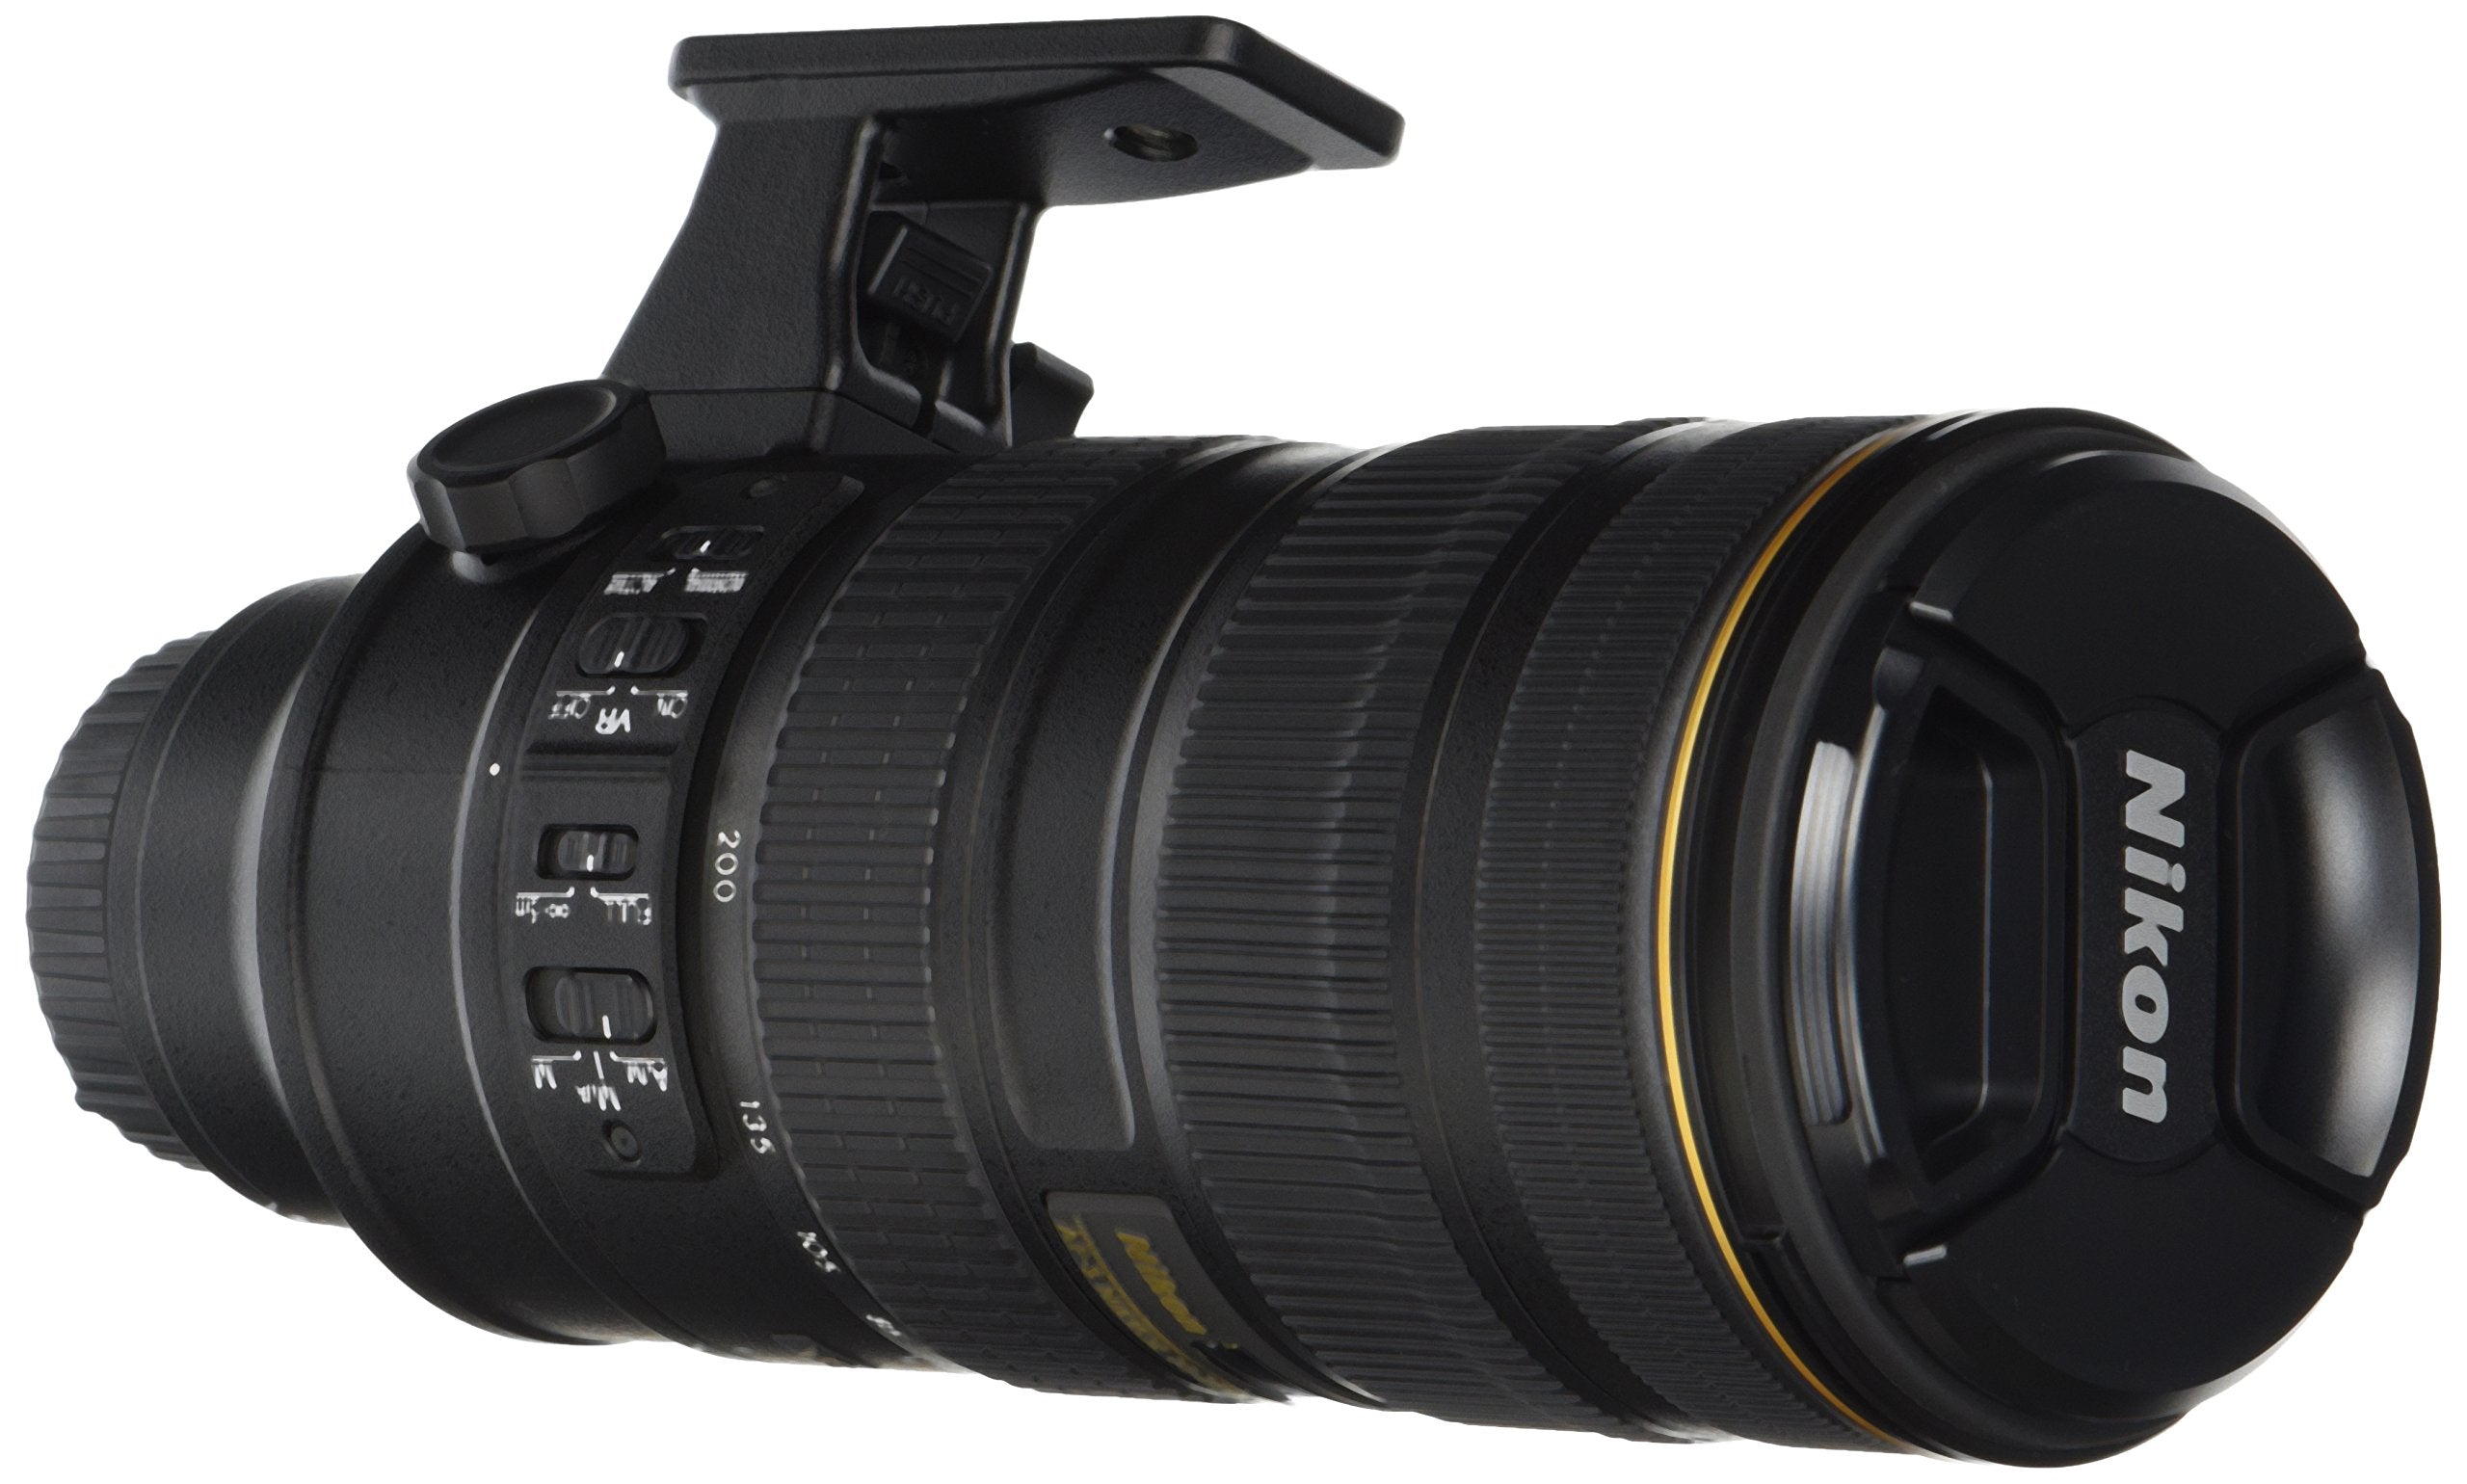 Nikon 70-200mm f/2.8G ED VR II AF-S Nikkor Zoom Lens For Nikon Digital SLR Cameras (Internaiotnal Model)